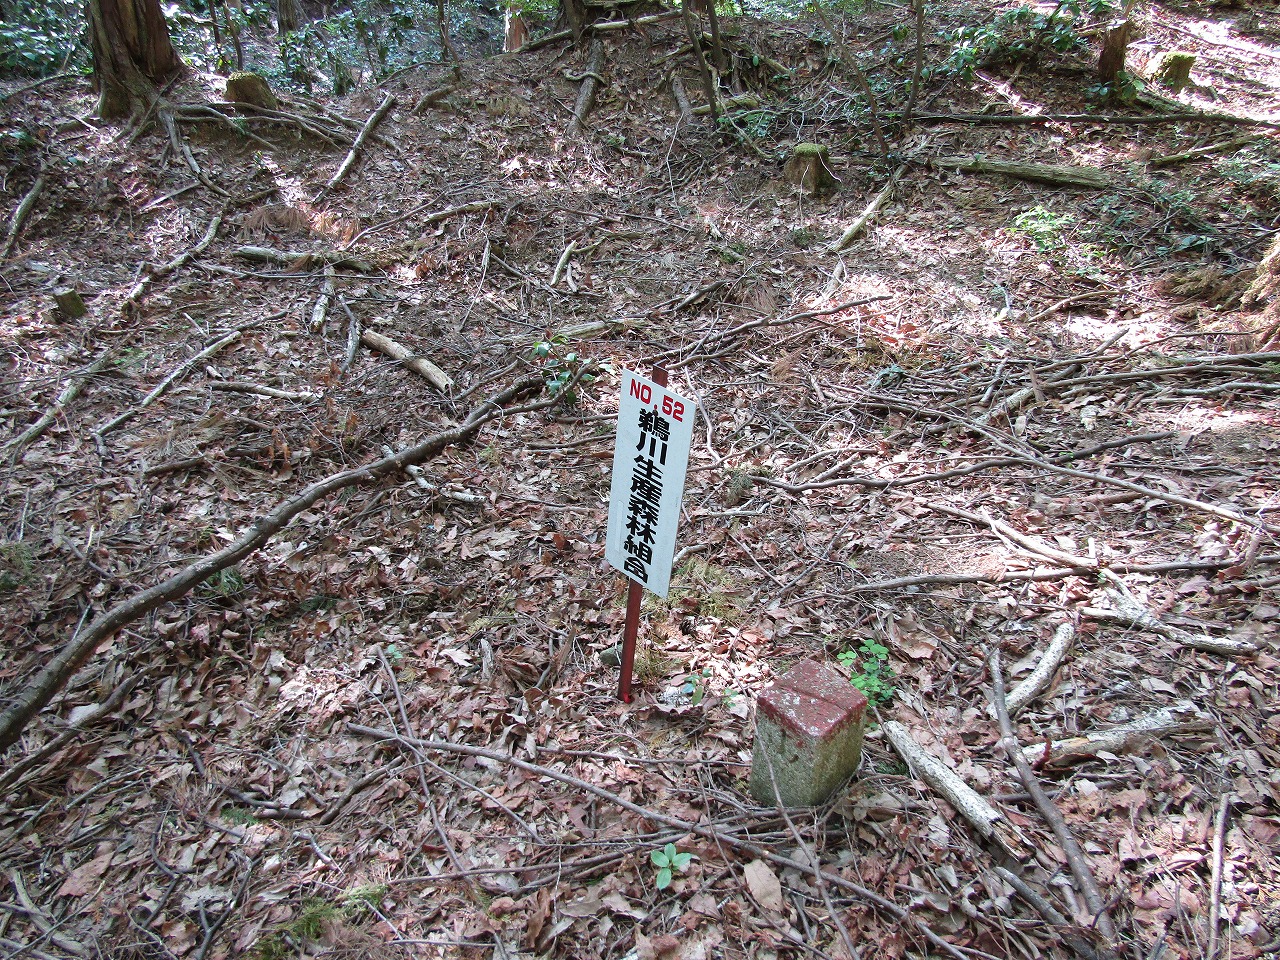 鵜川生産森林組合の看板、N0,52